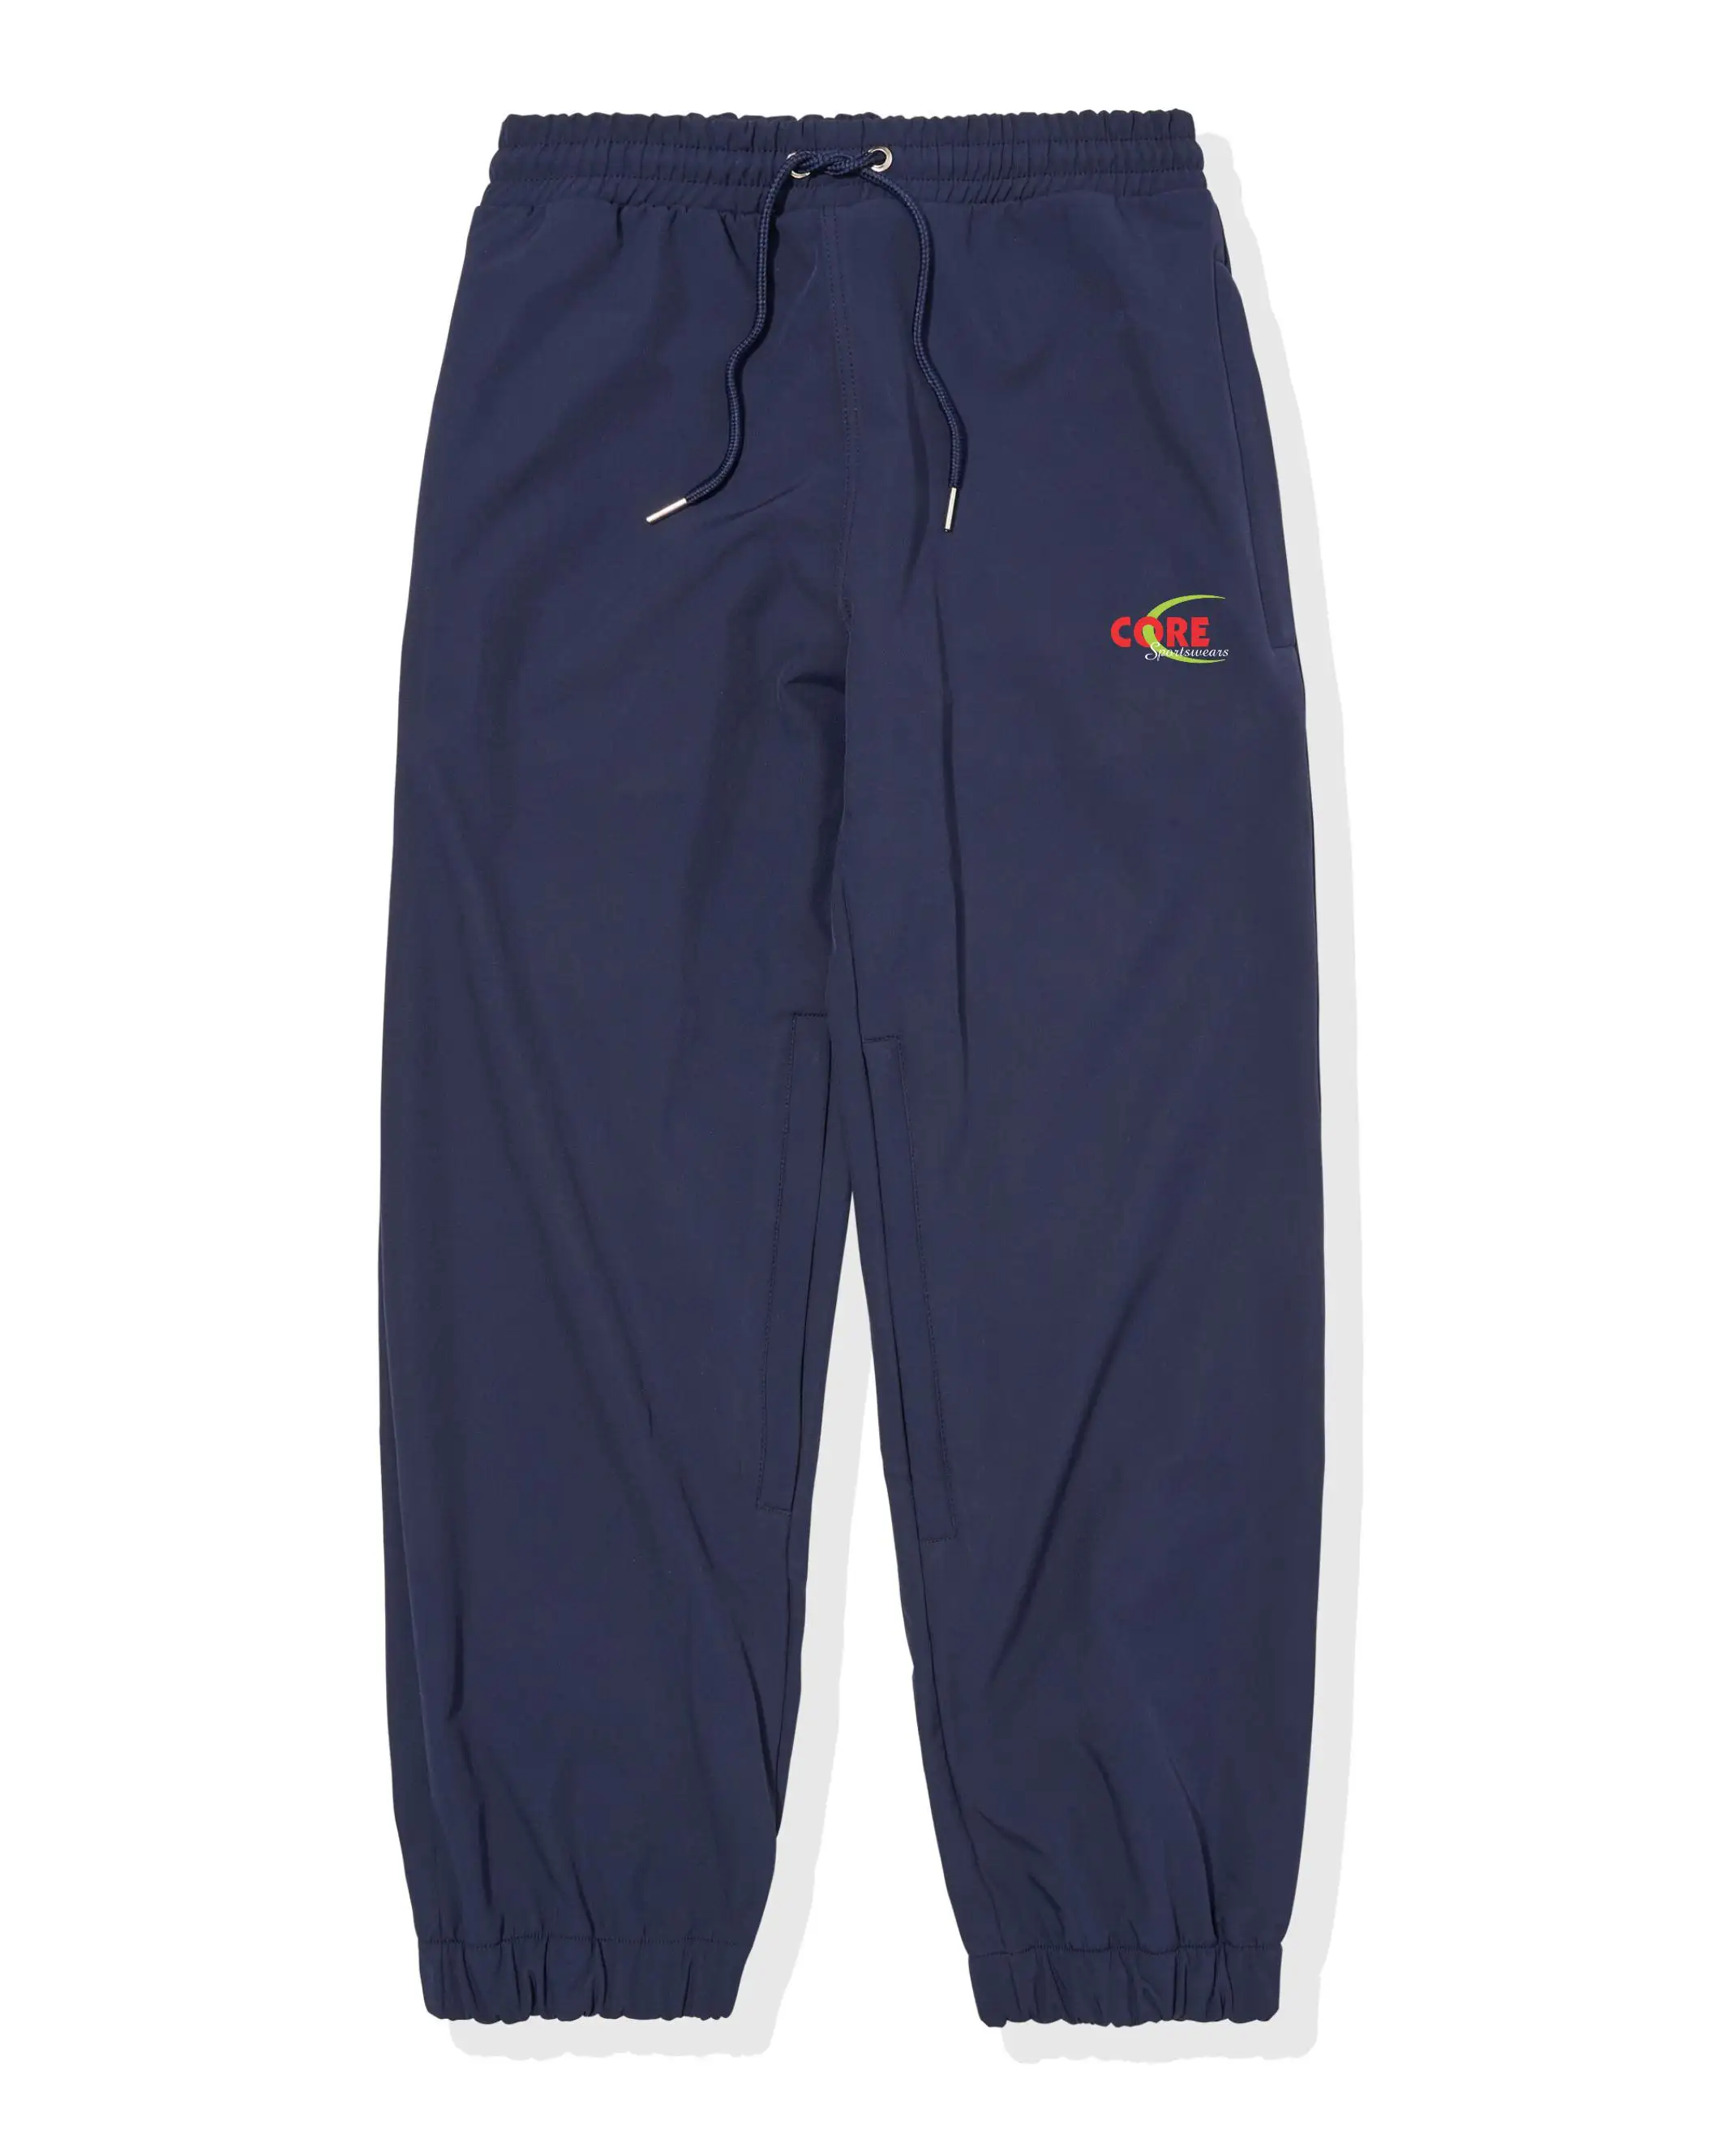 Chenxi — pantalon de Ski imperméable pour femmes, caleçon personnalisé pour l'hiver et la neige, élastique 10k, doublure polaire, vente en gros